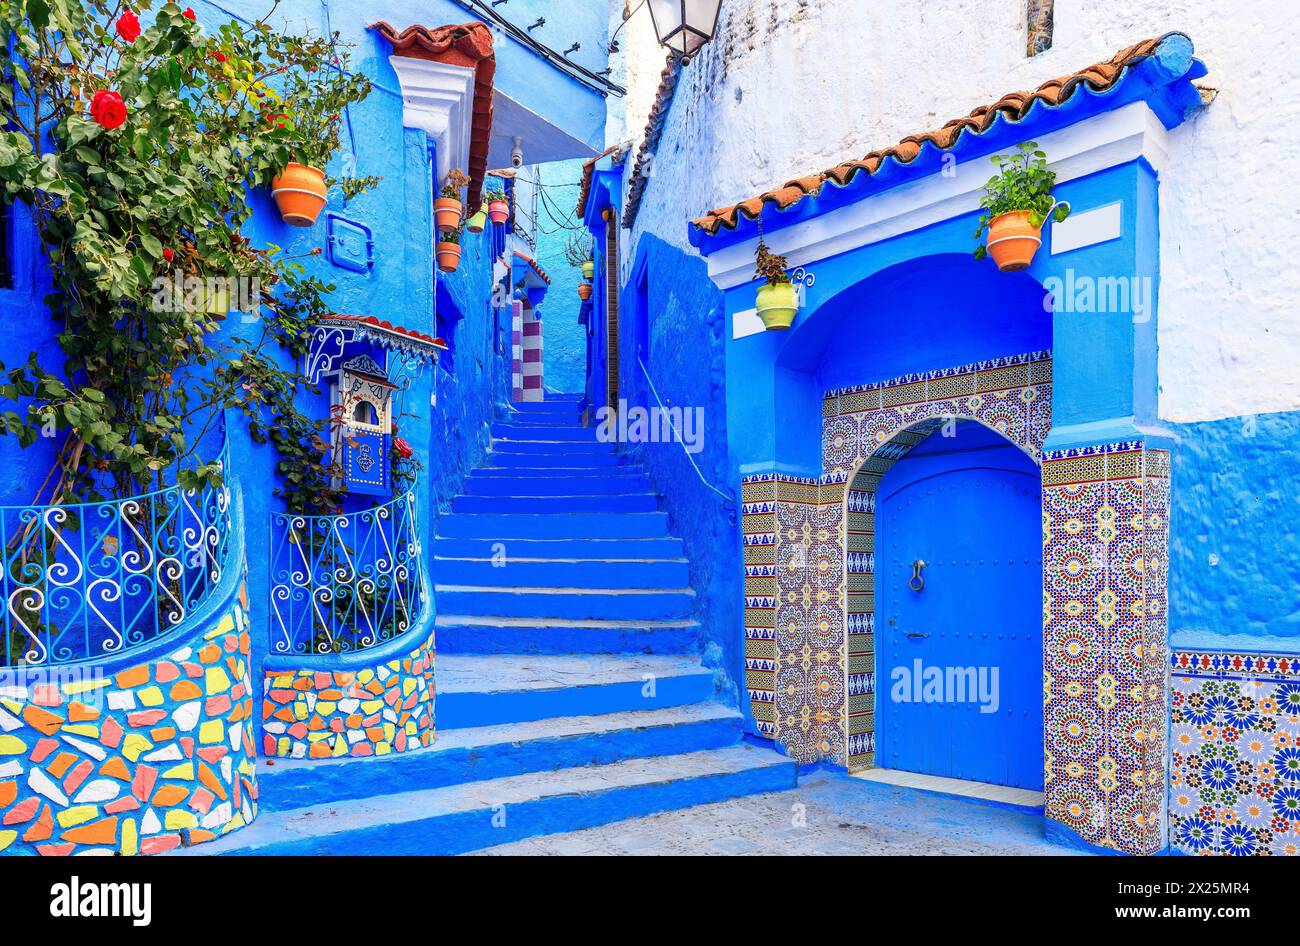 Chefchaouen, Marocco. La vecchia città fortificata, o medina con le sue case tradizionali dipinte in blu e bianco. Foto Stock